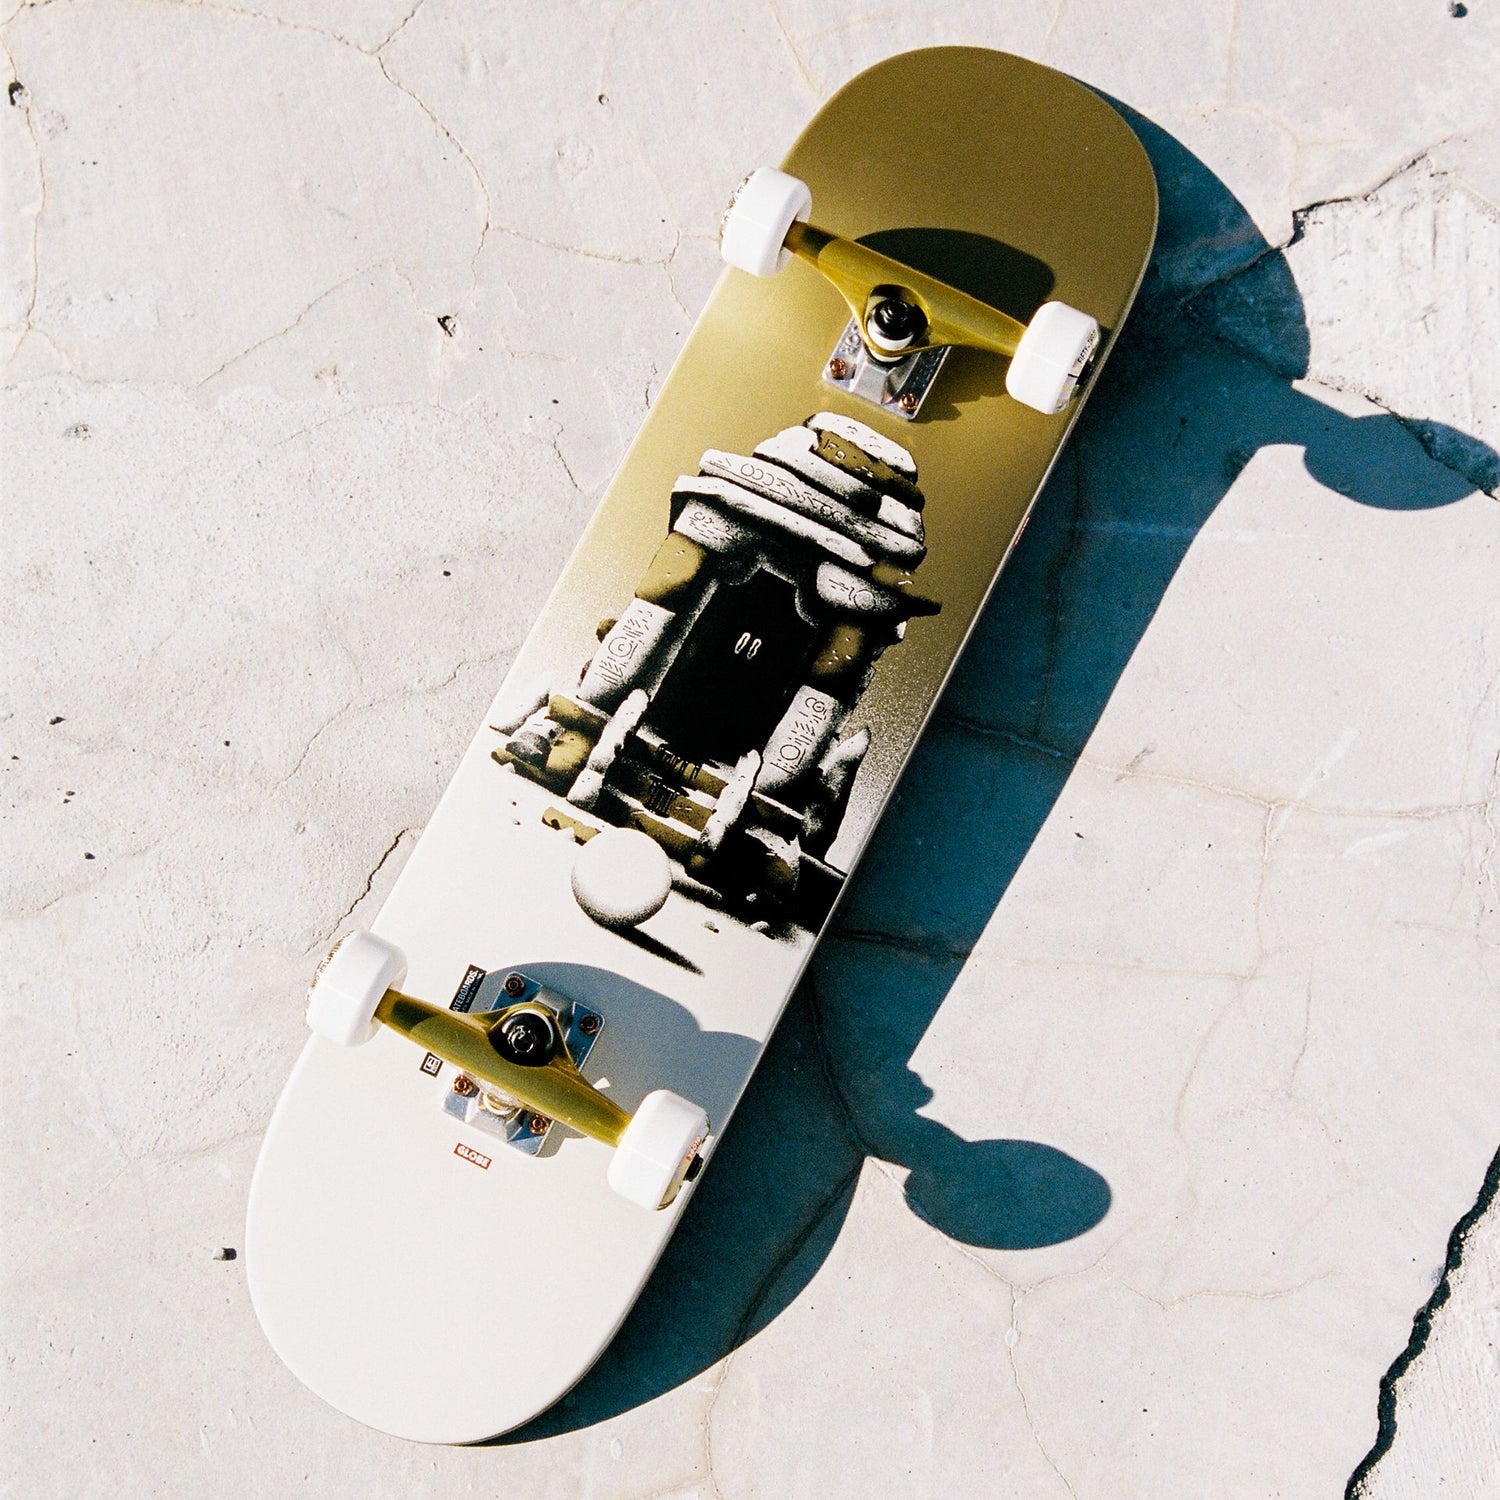 Tienda G2 Rapid Space - Sundance - 8.0 Skateboard Deck